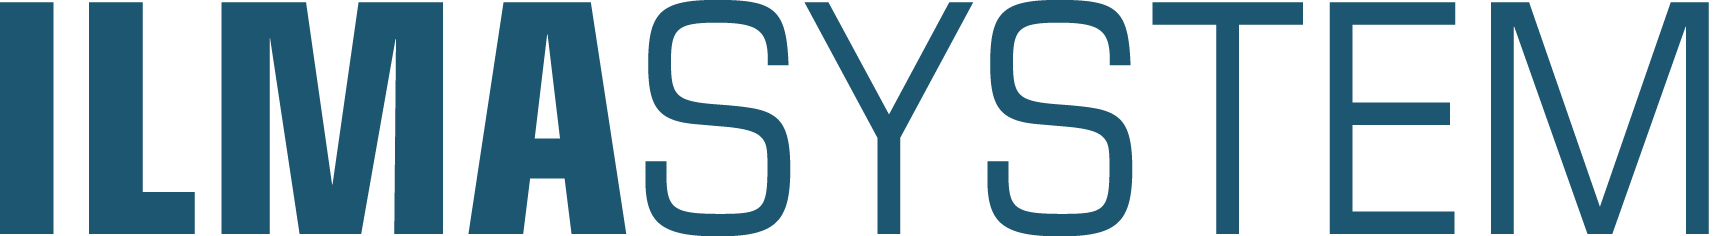 Ilmasystem Oy logo